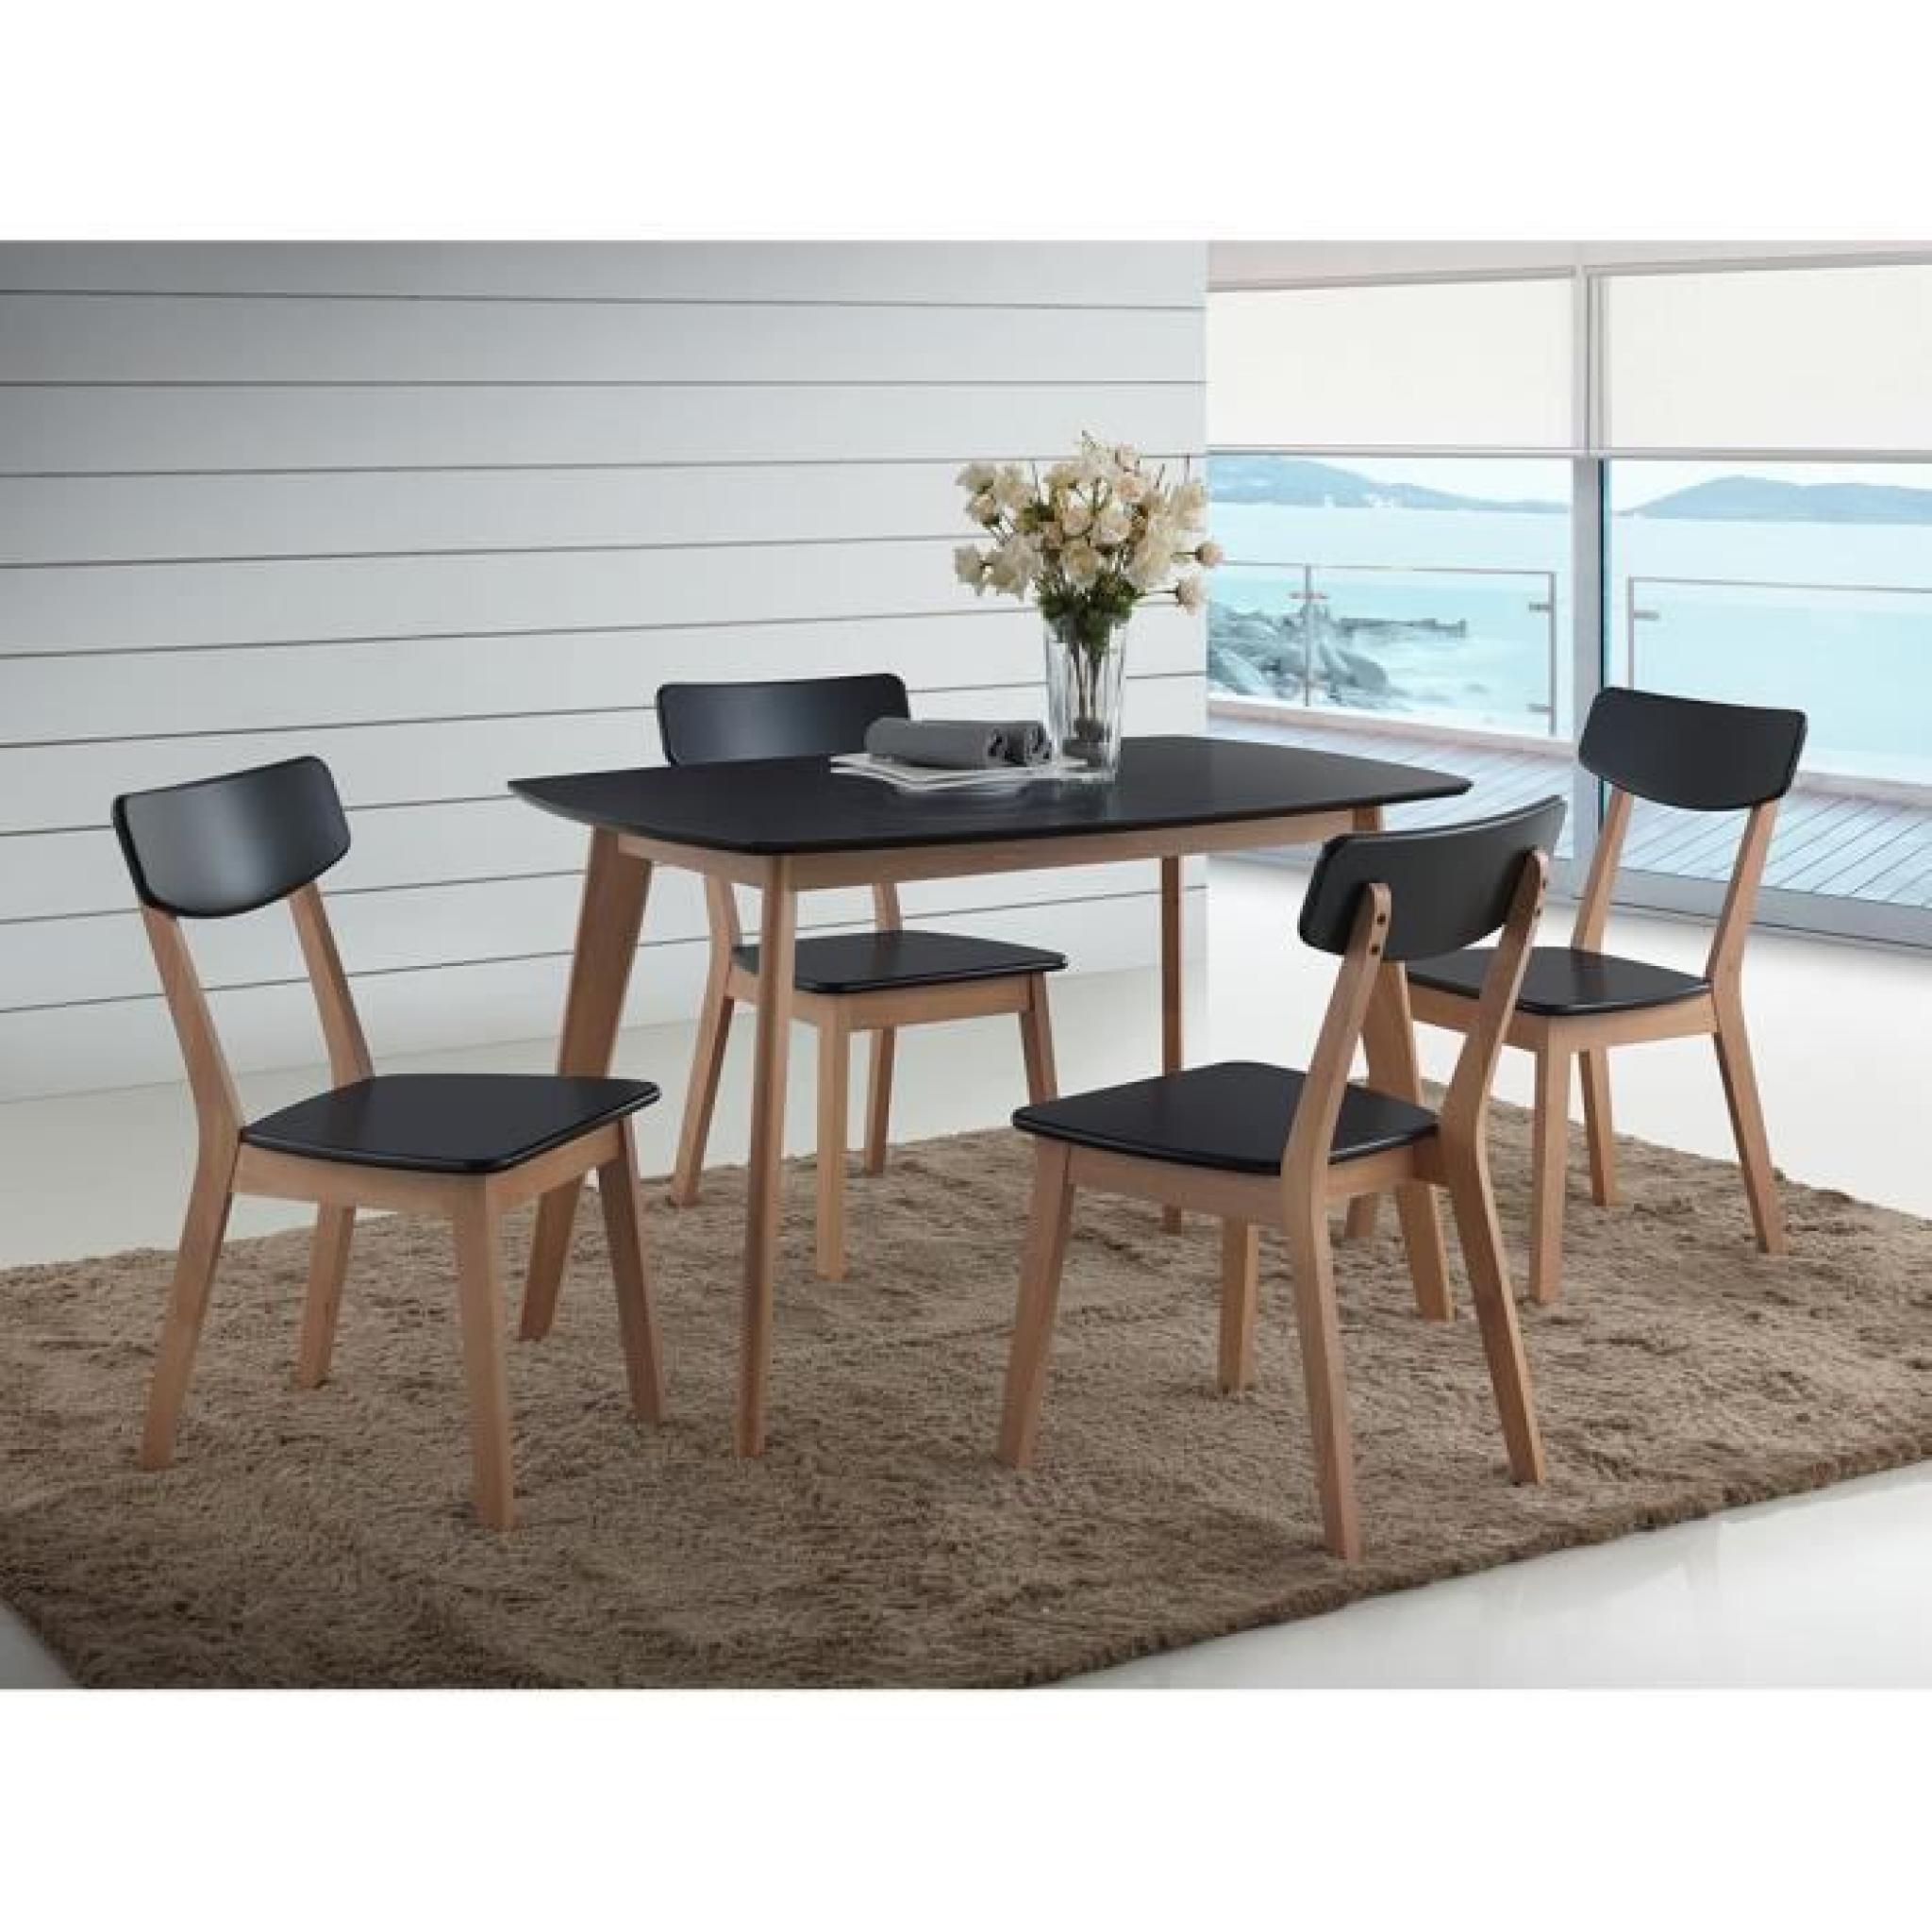 Ensemble OSLO noir. Table de cuisine et salle à manger design. Set composé d'une table et de 4 chaises ultra tendance.